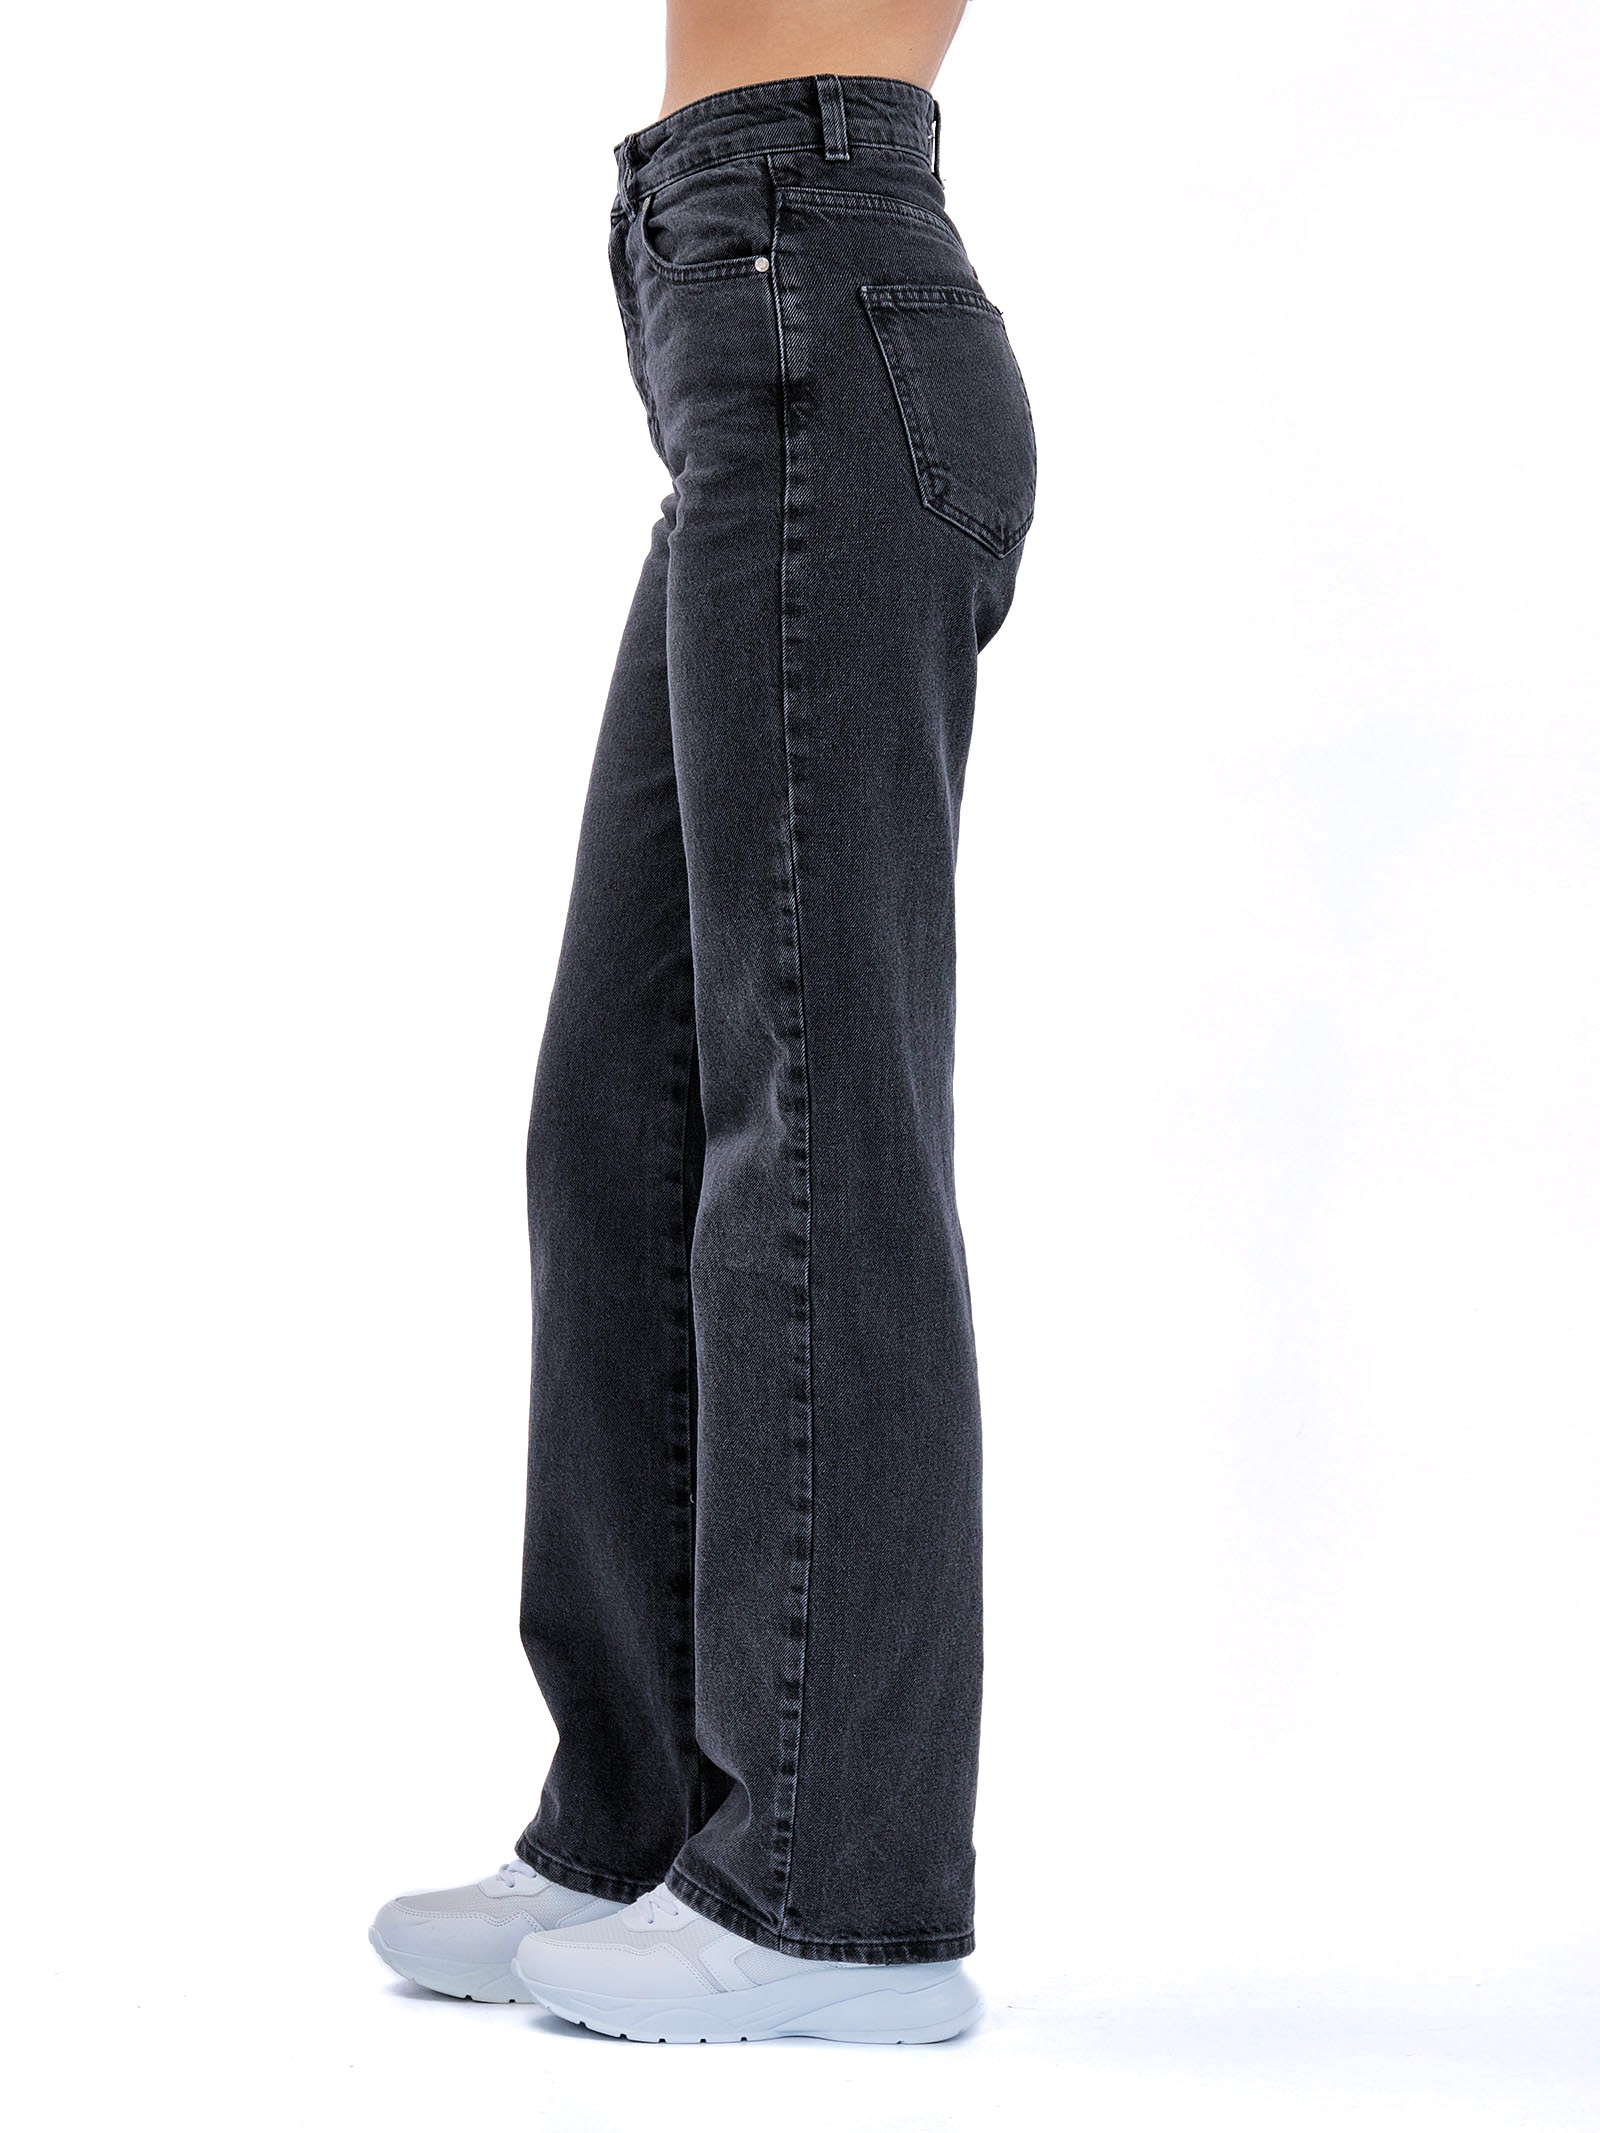 Women's wide leg Jeans Black